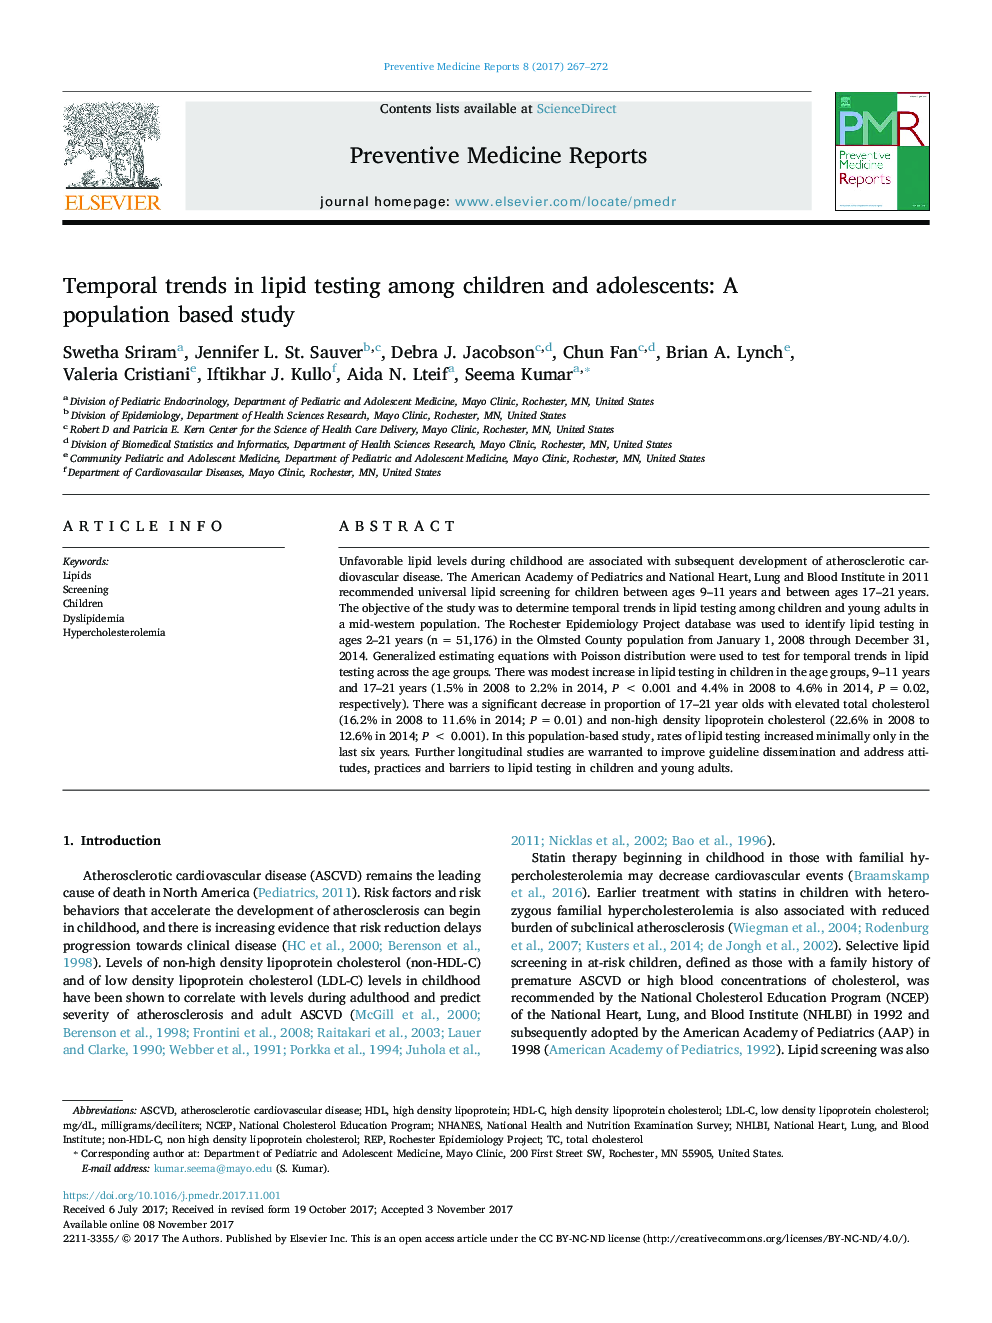 روند زمانی در آزمایش لیپید در کودکان و نوجوانان: یک مطالعه مبتنی بر جمعیت 